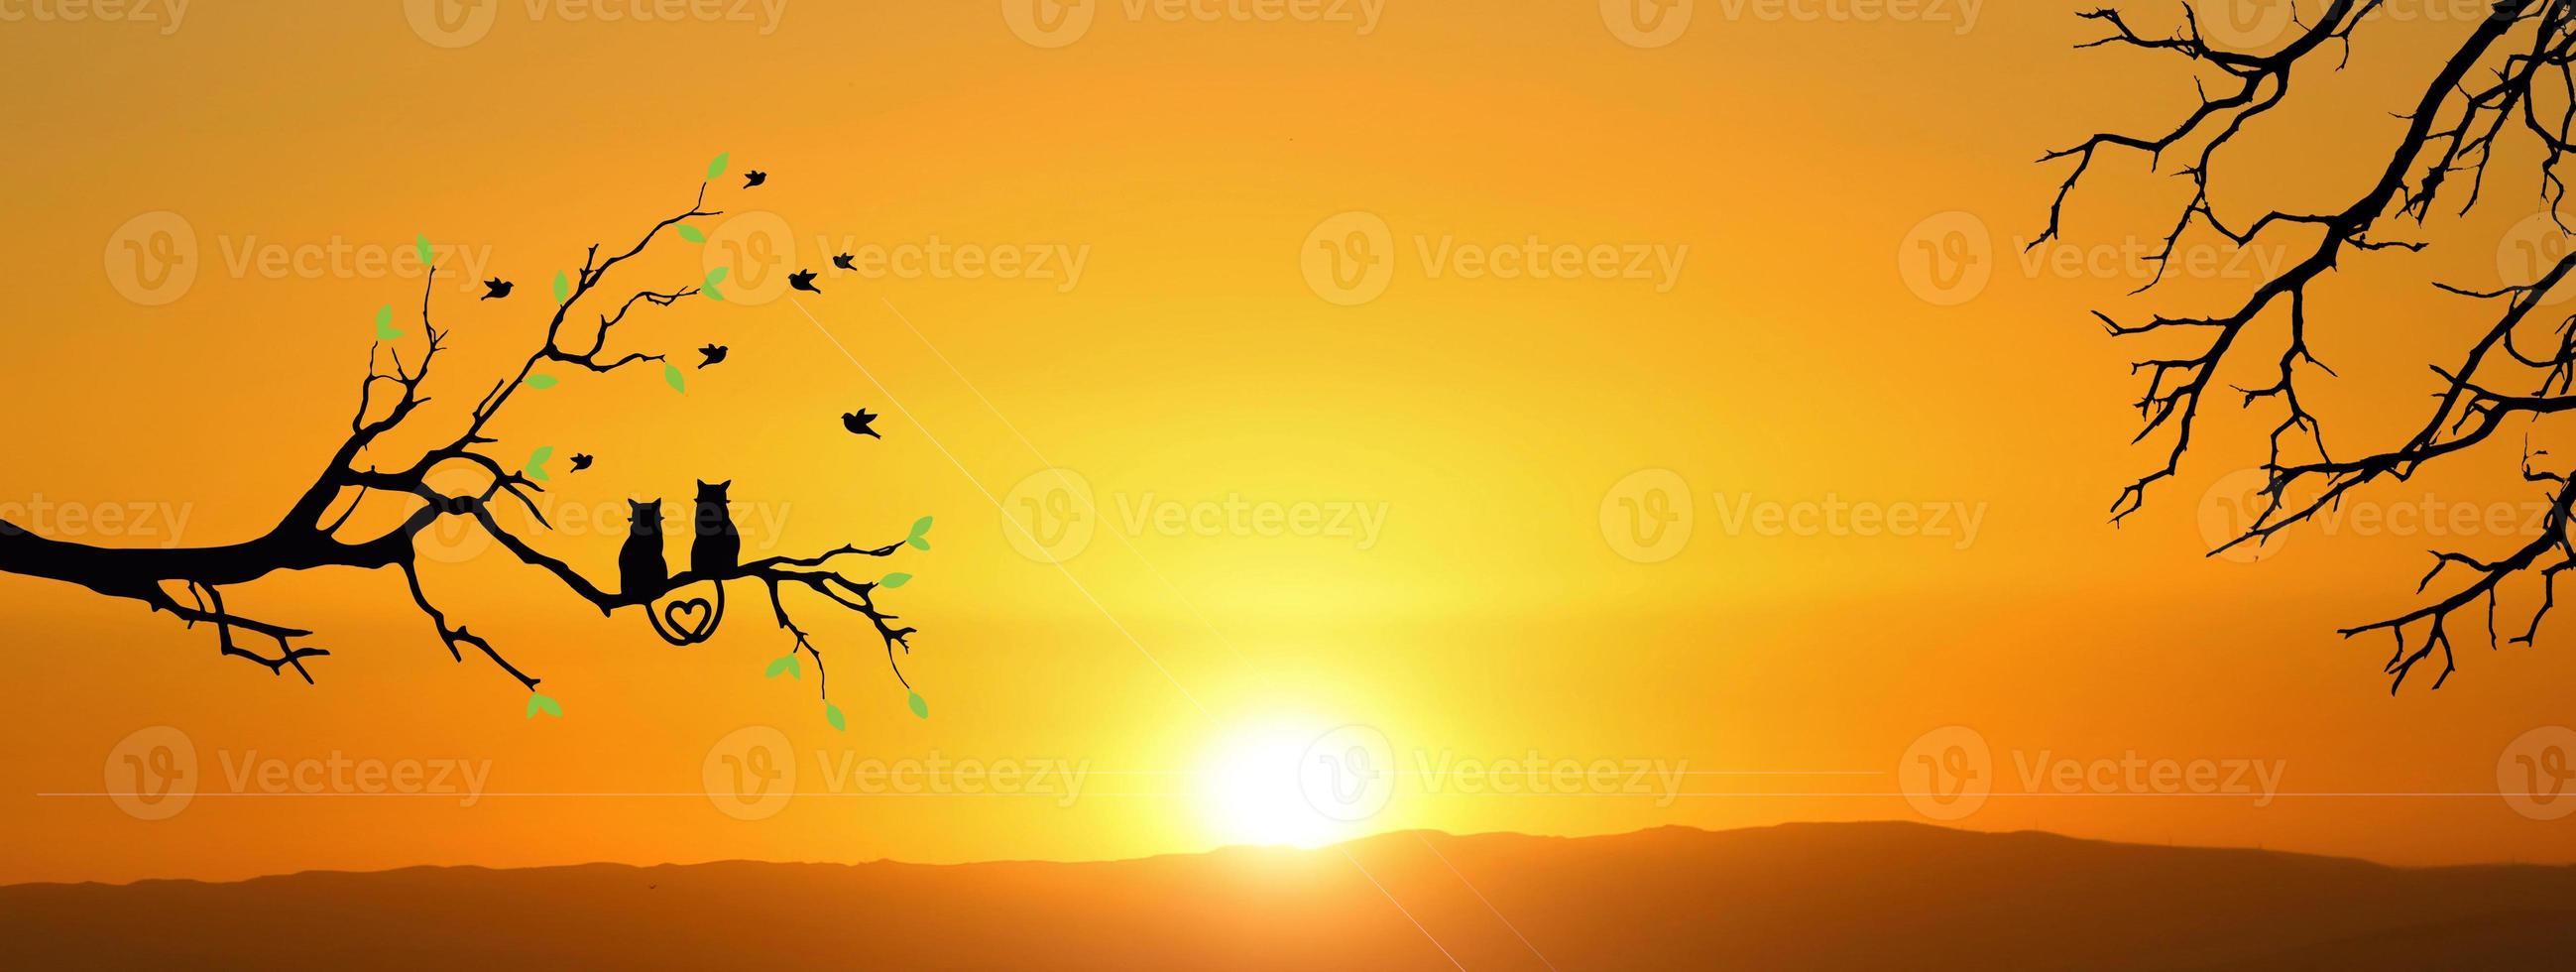 silhouette di una coppia di gatti su un ramo, bella vista. concetto di amore, coppia, felicità foto